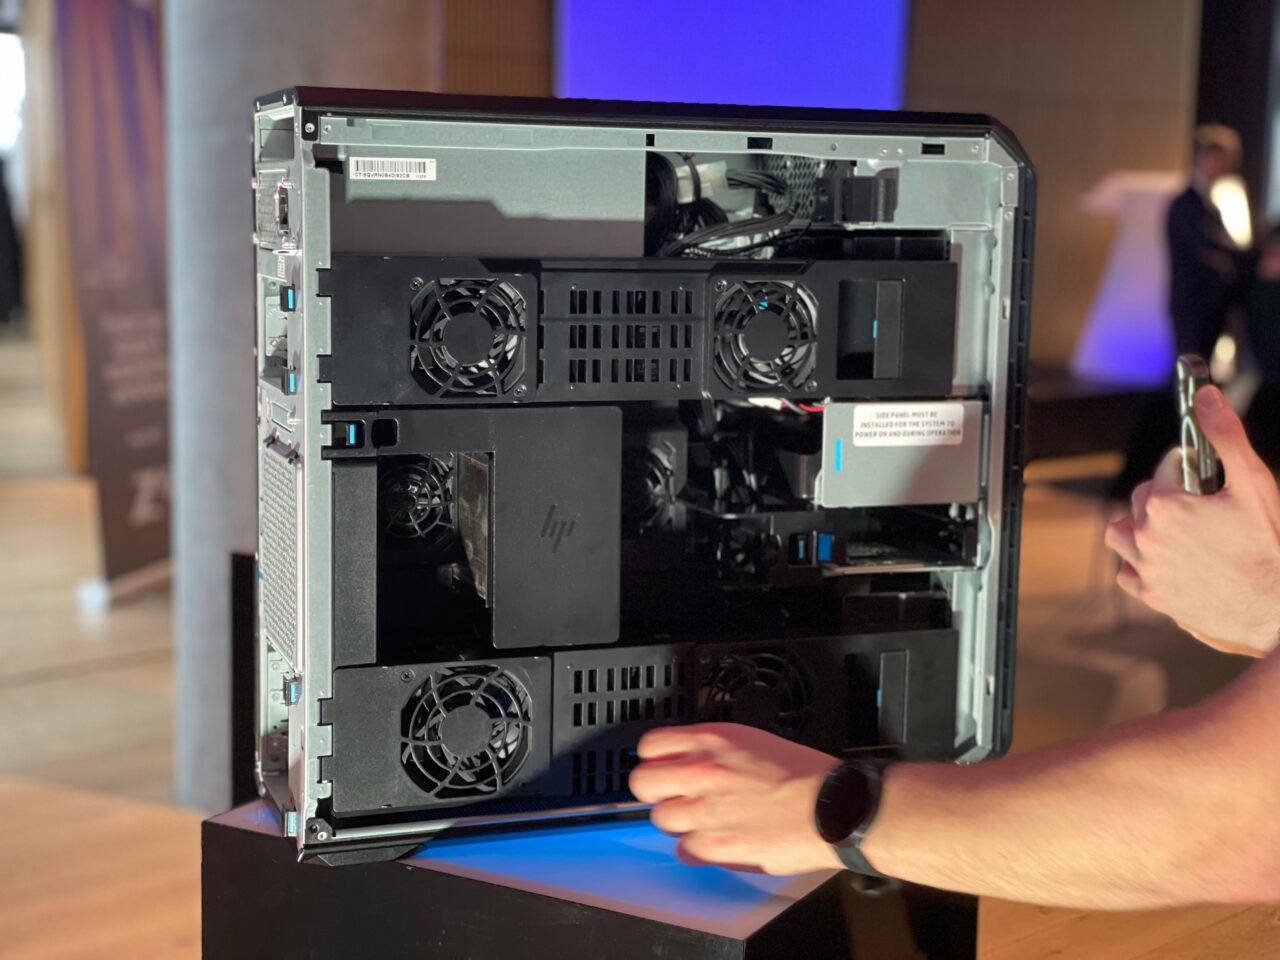 Obudowa komputera stacjonarnego HP z otwartym panelem bocznym pokazującym wewnętrzne komponenty, w tym karty graficzne i wentylatory chłodzące. Obracana jest przez osobę znajdującą się po prawej stronie zdjęcia.